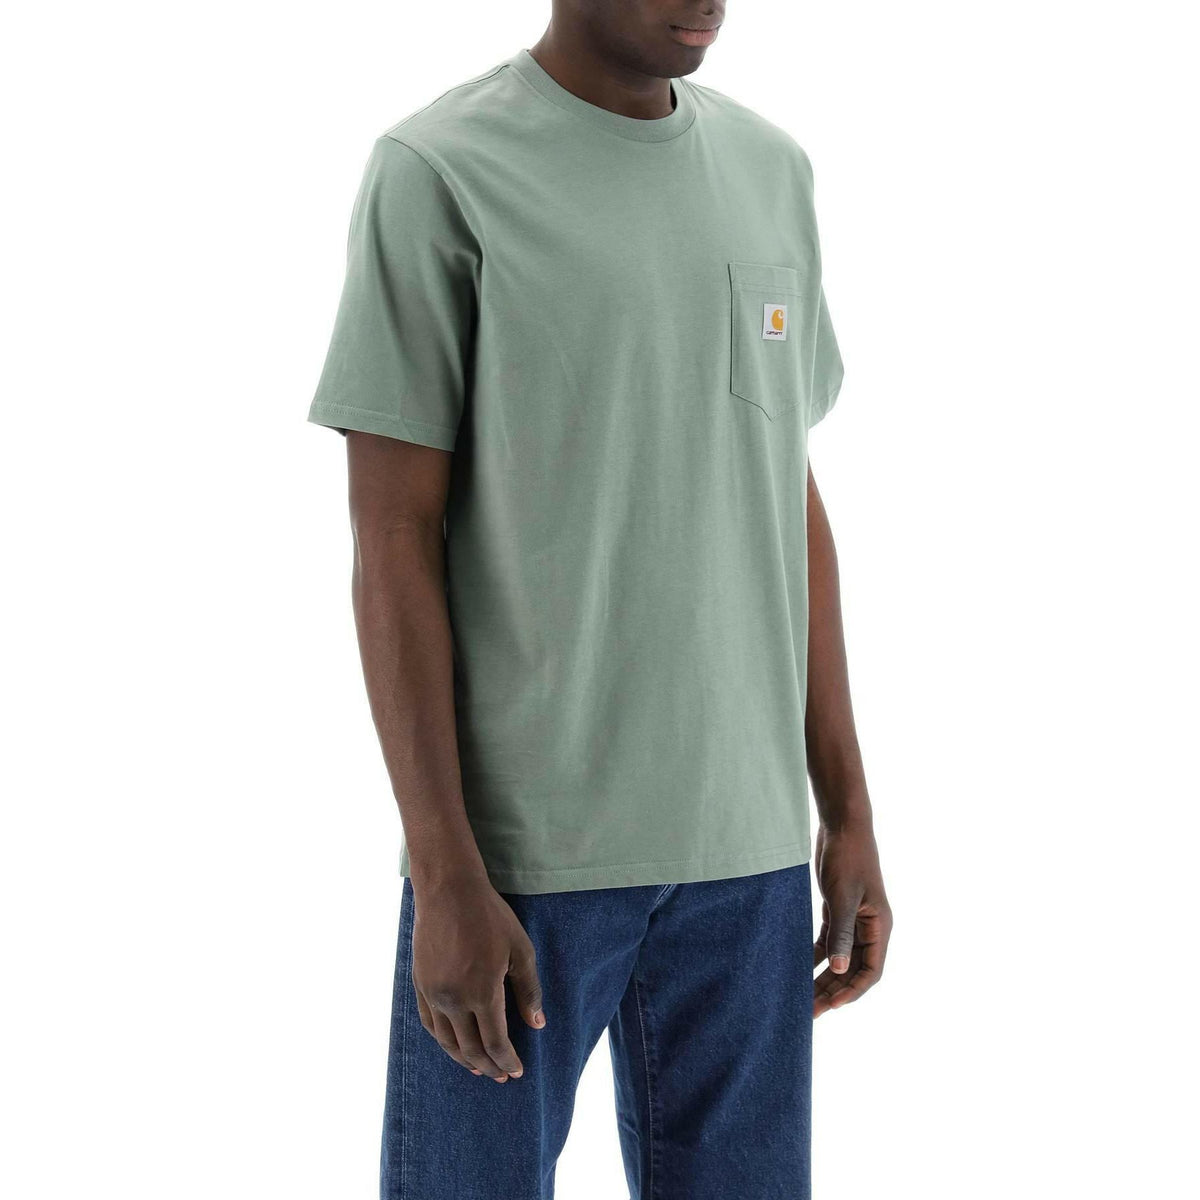 CARHARTT WIP - Park Green Cotton T-Shirt with Chest Pocket - JOHN JULIA